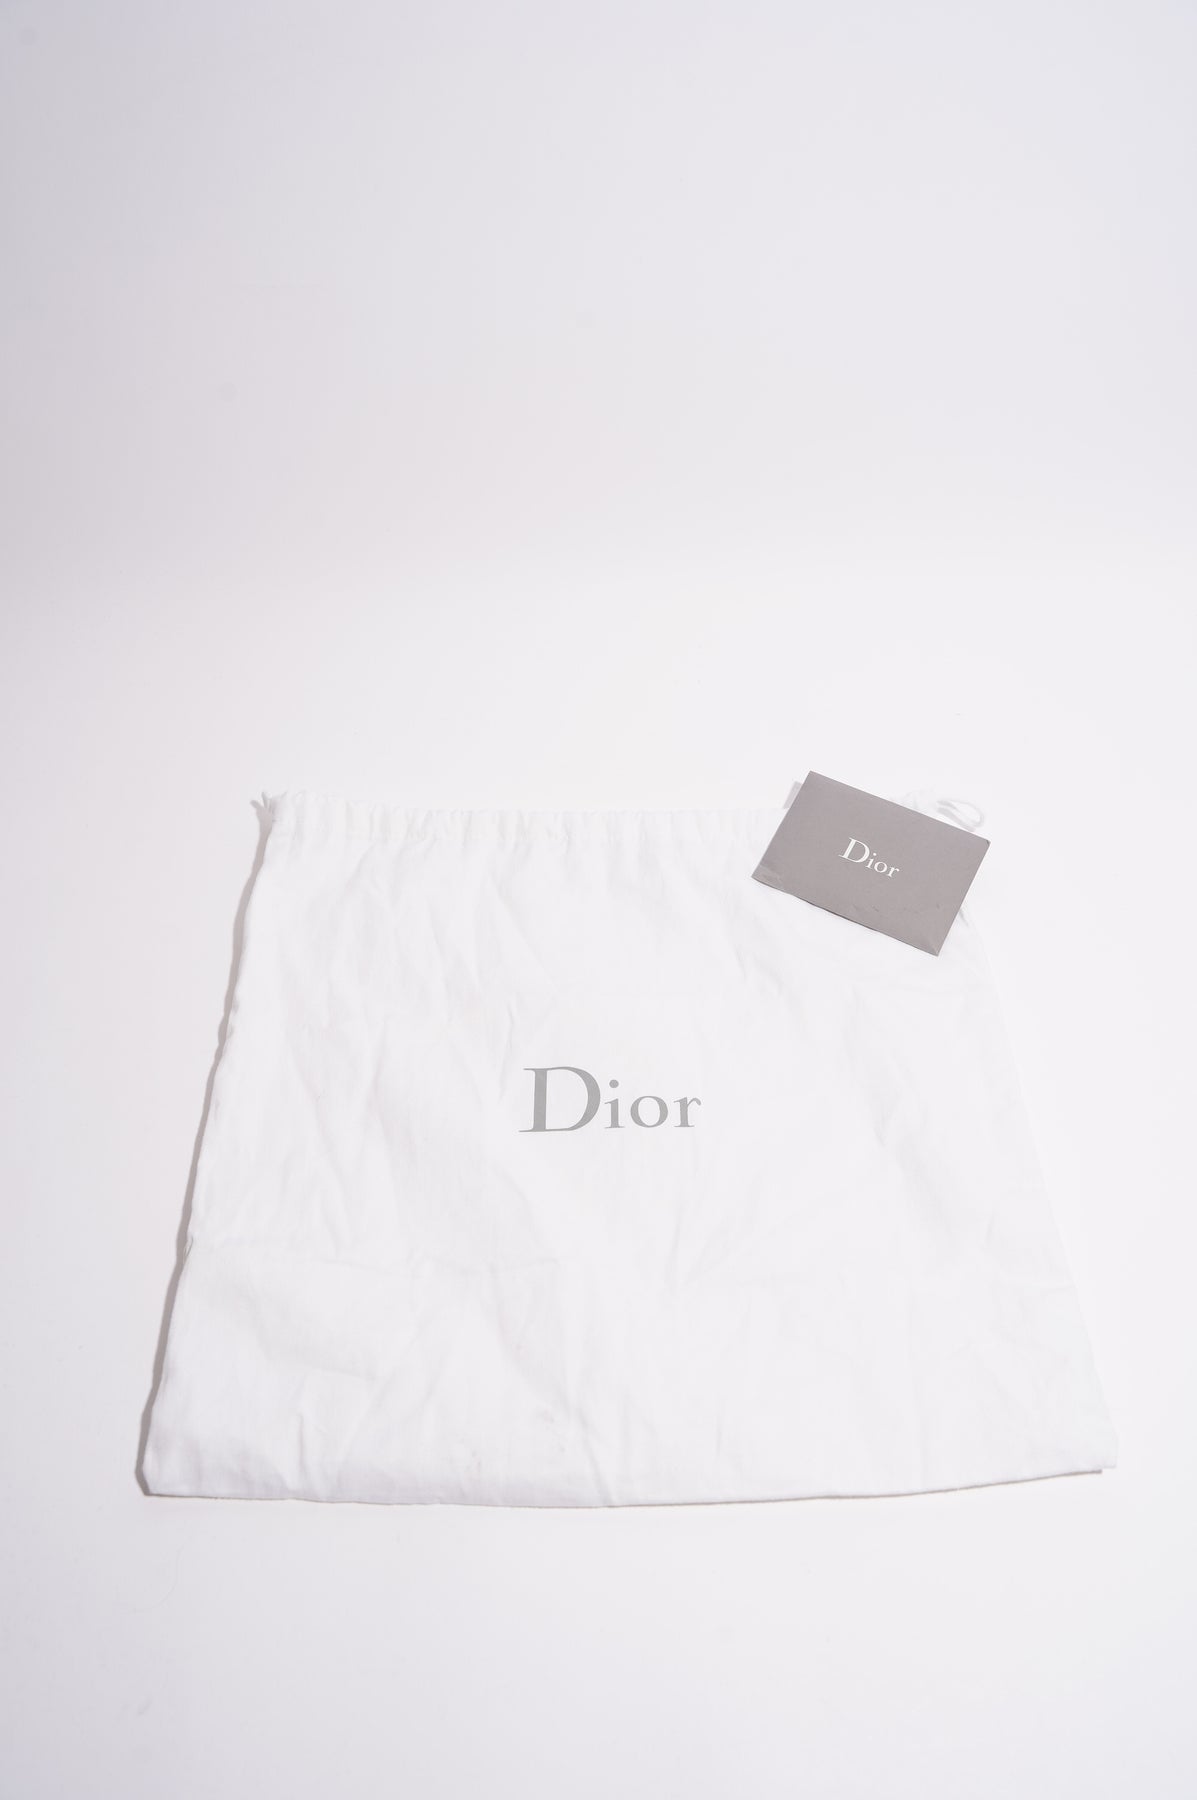 Dior Saddle Medium Camouflage White